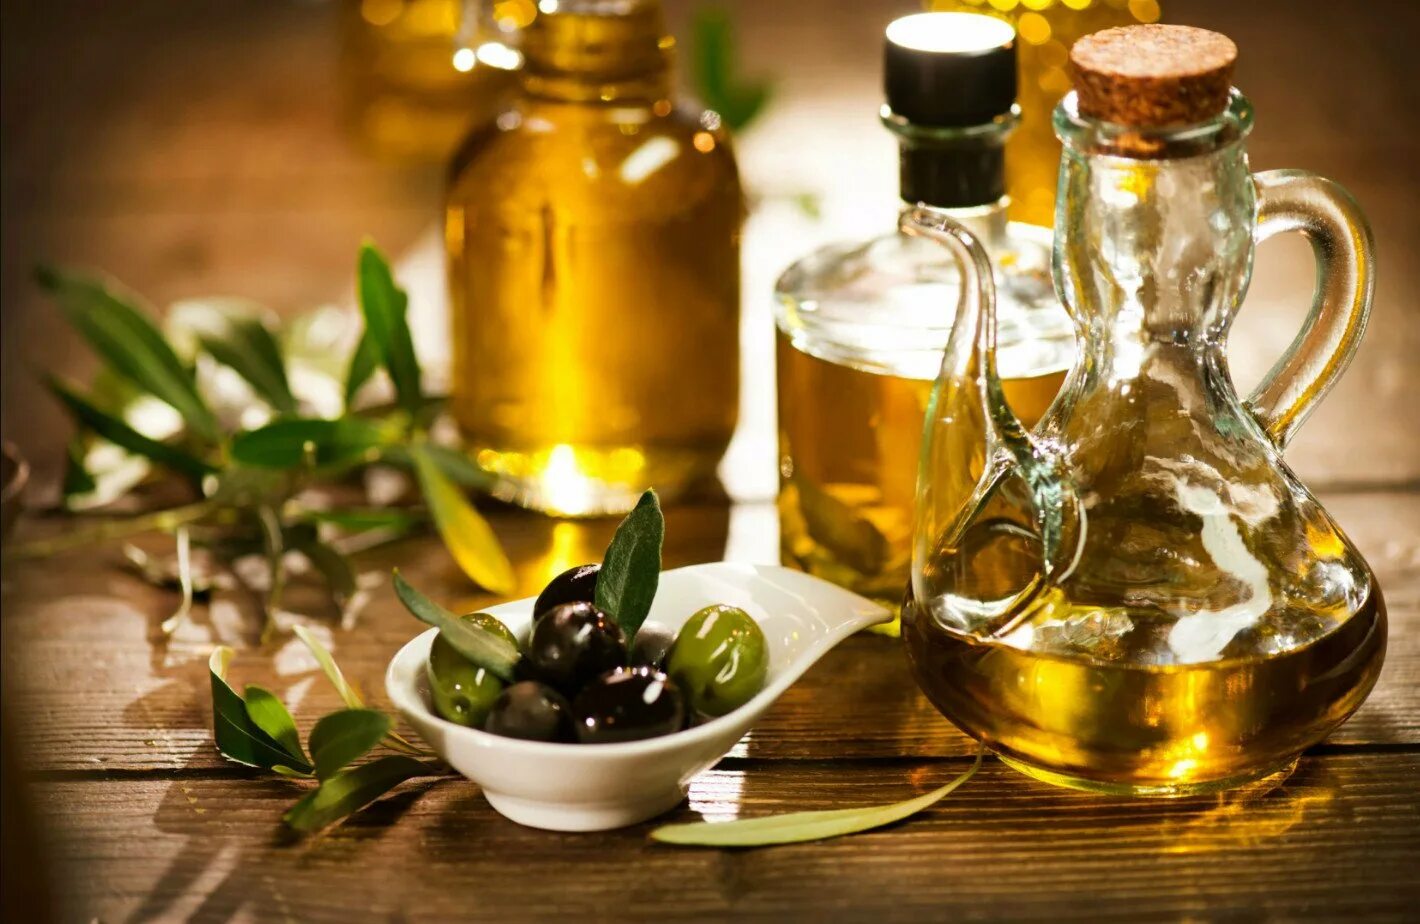 Olive Oil масло оливковое. Олив Ойл масло оливковое. Масло растительное с оливковым. Оливки и оливковое масло.